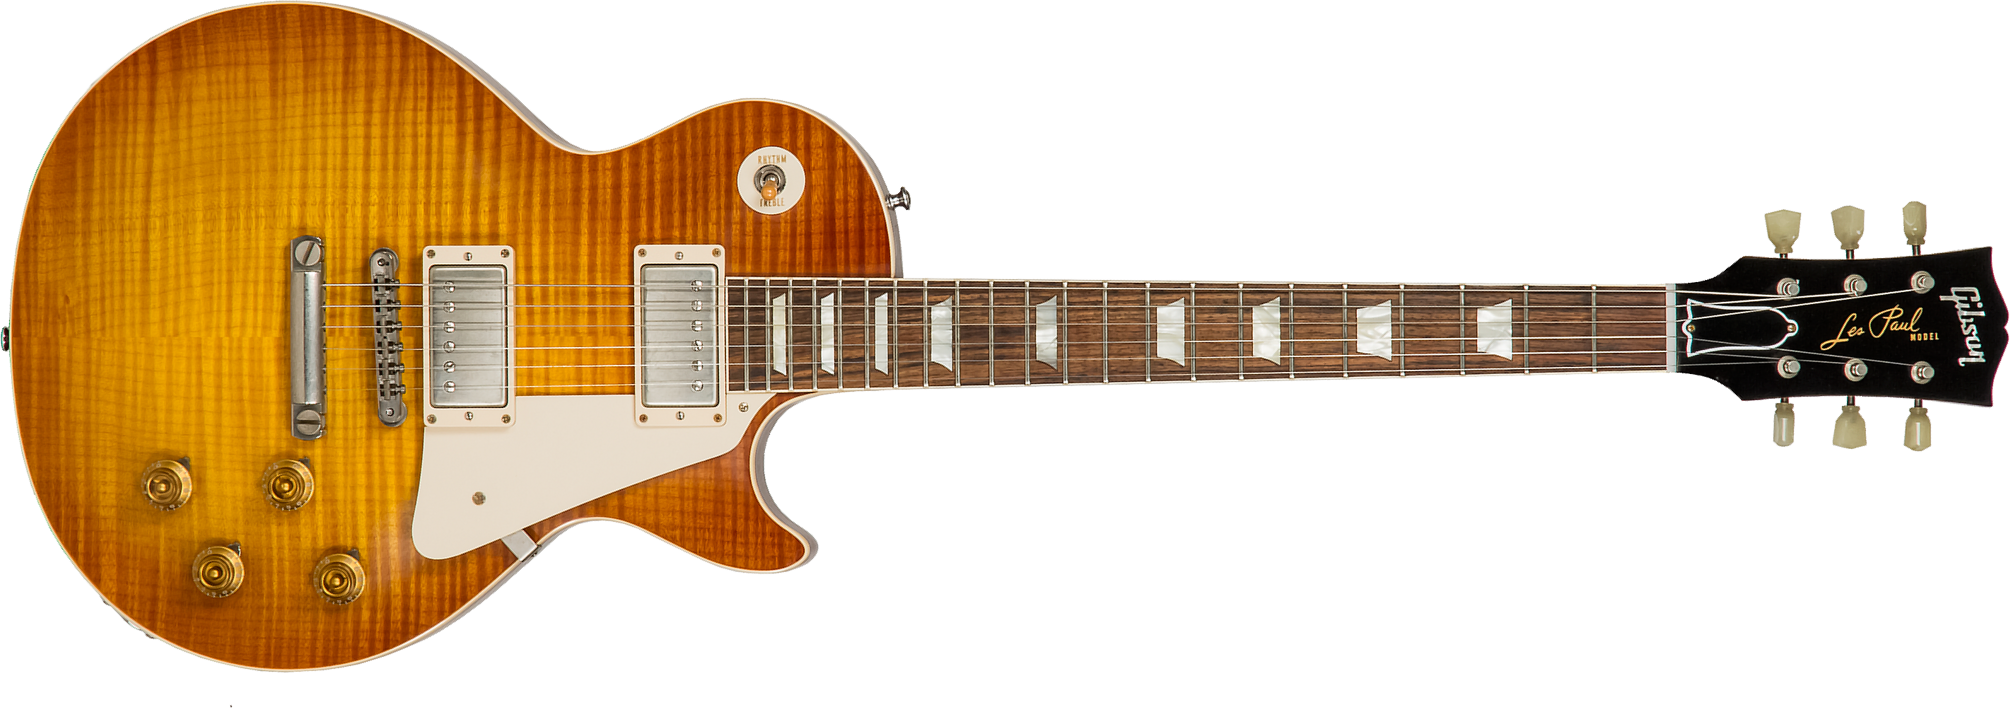 Gibson Custom Shop M2m Les Paul Standard 1959 Reissue 2h Ht Rw #943075 - Vos Iced Tea - Guitarra eléctrica de corte único. - Main picture